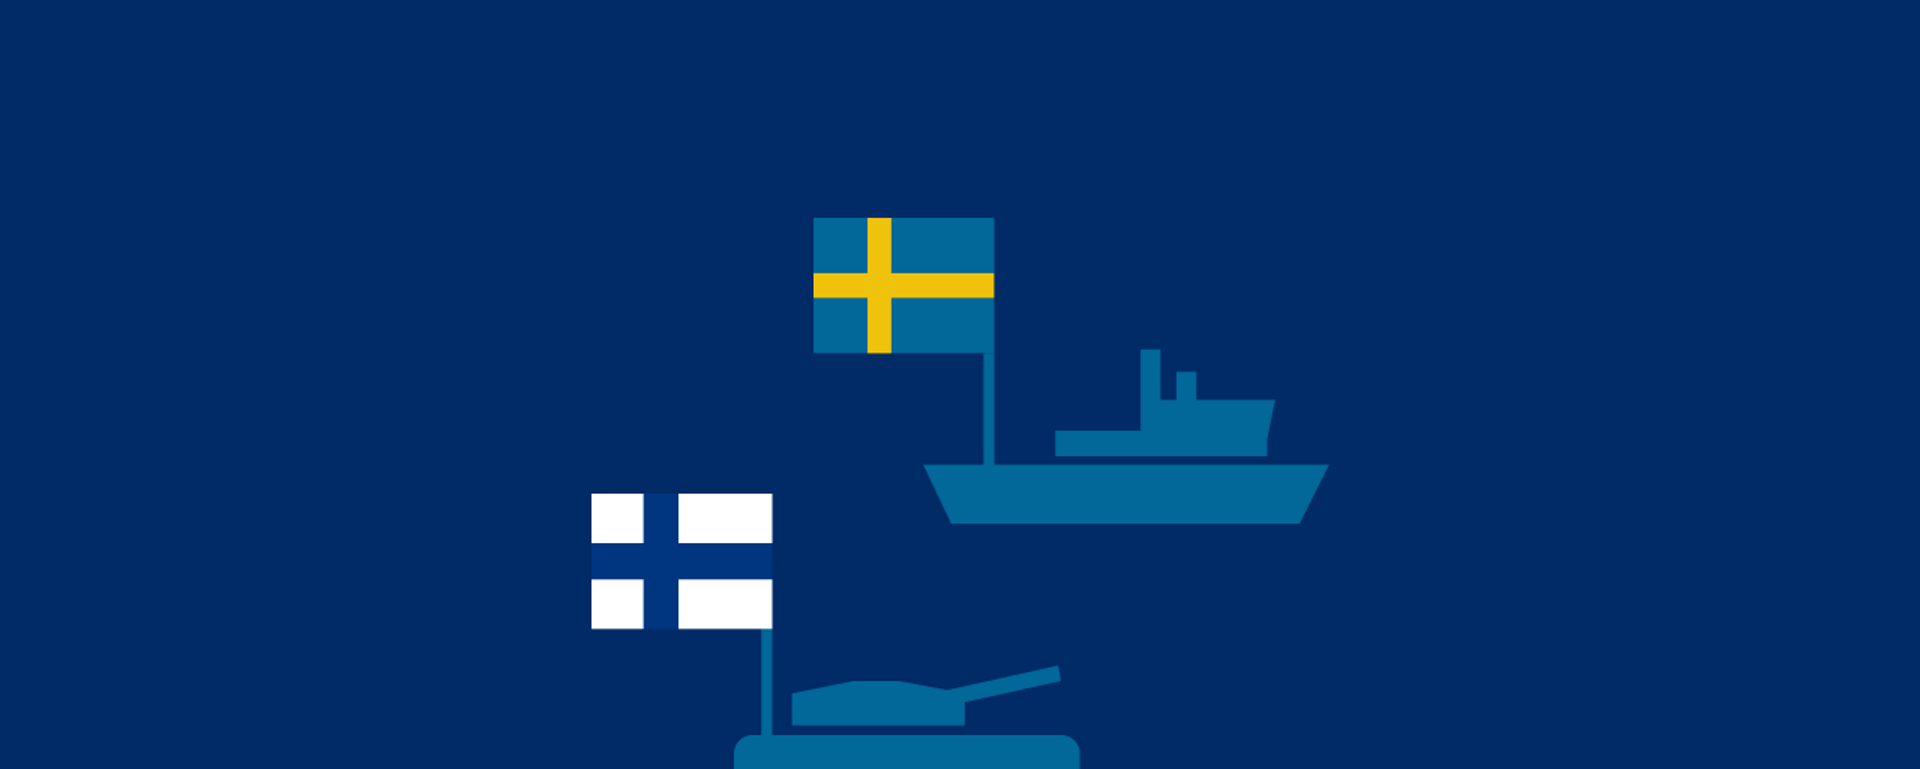 قدرت نظامی سوئد و فنلاند، نامزدهای عضویت در ناتو - اسپوتنیک ایران  , 1920, 18.05.2022